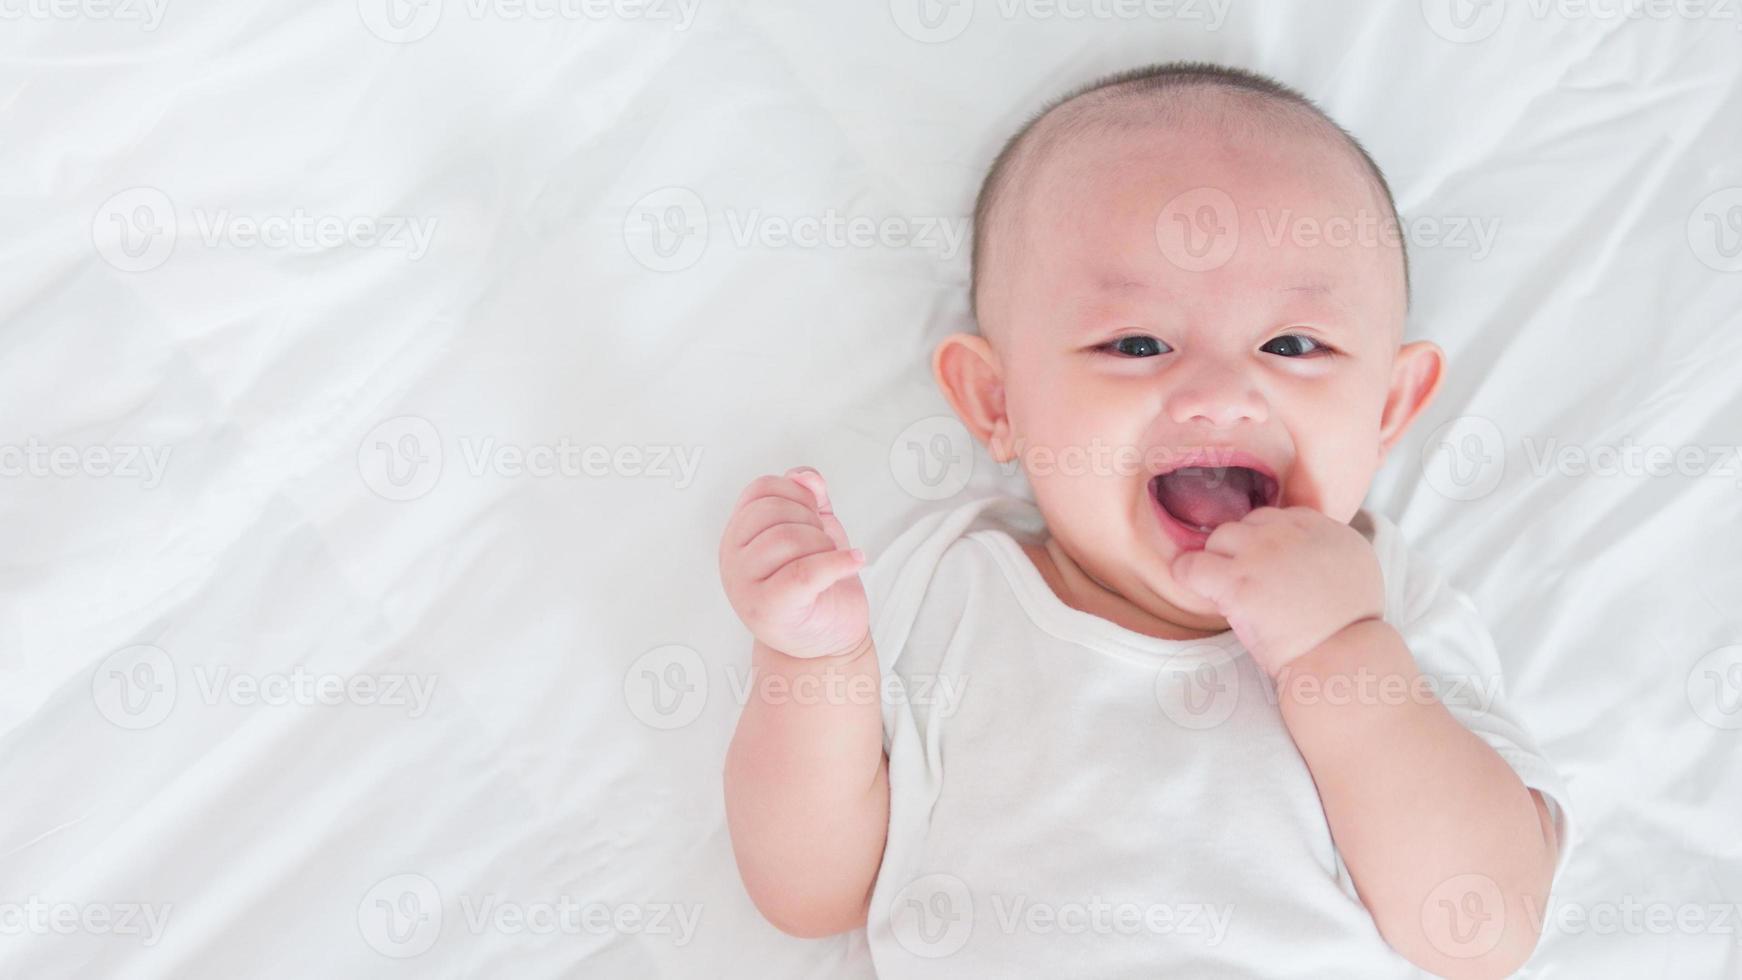 retrato de bebê recém-nascido asiático fofo deitado na cama branca olhe para a câmera com cara feliz de sorriso rindo. inocente pequeno novo bebê adorável. conceito de paternidade e dia das mães. foto